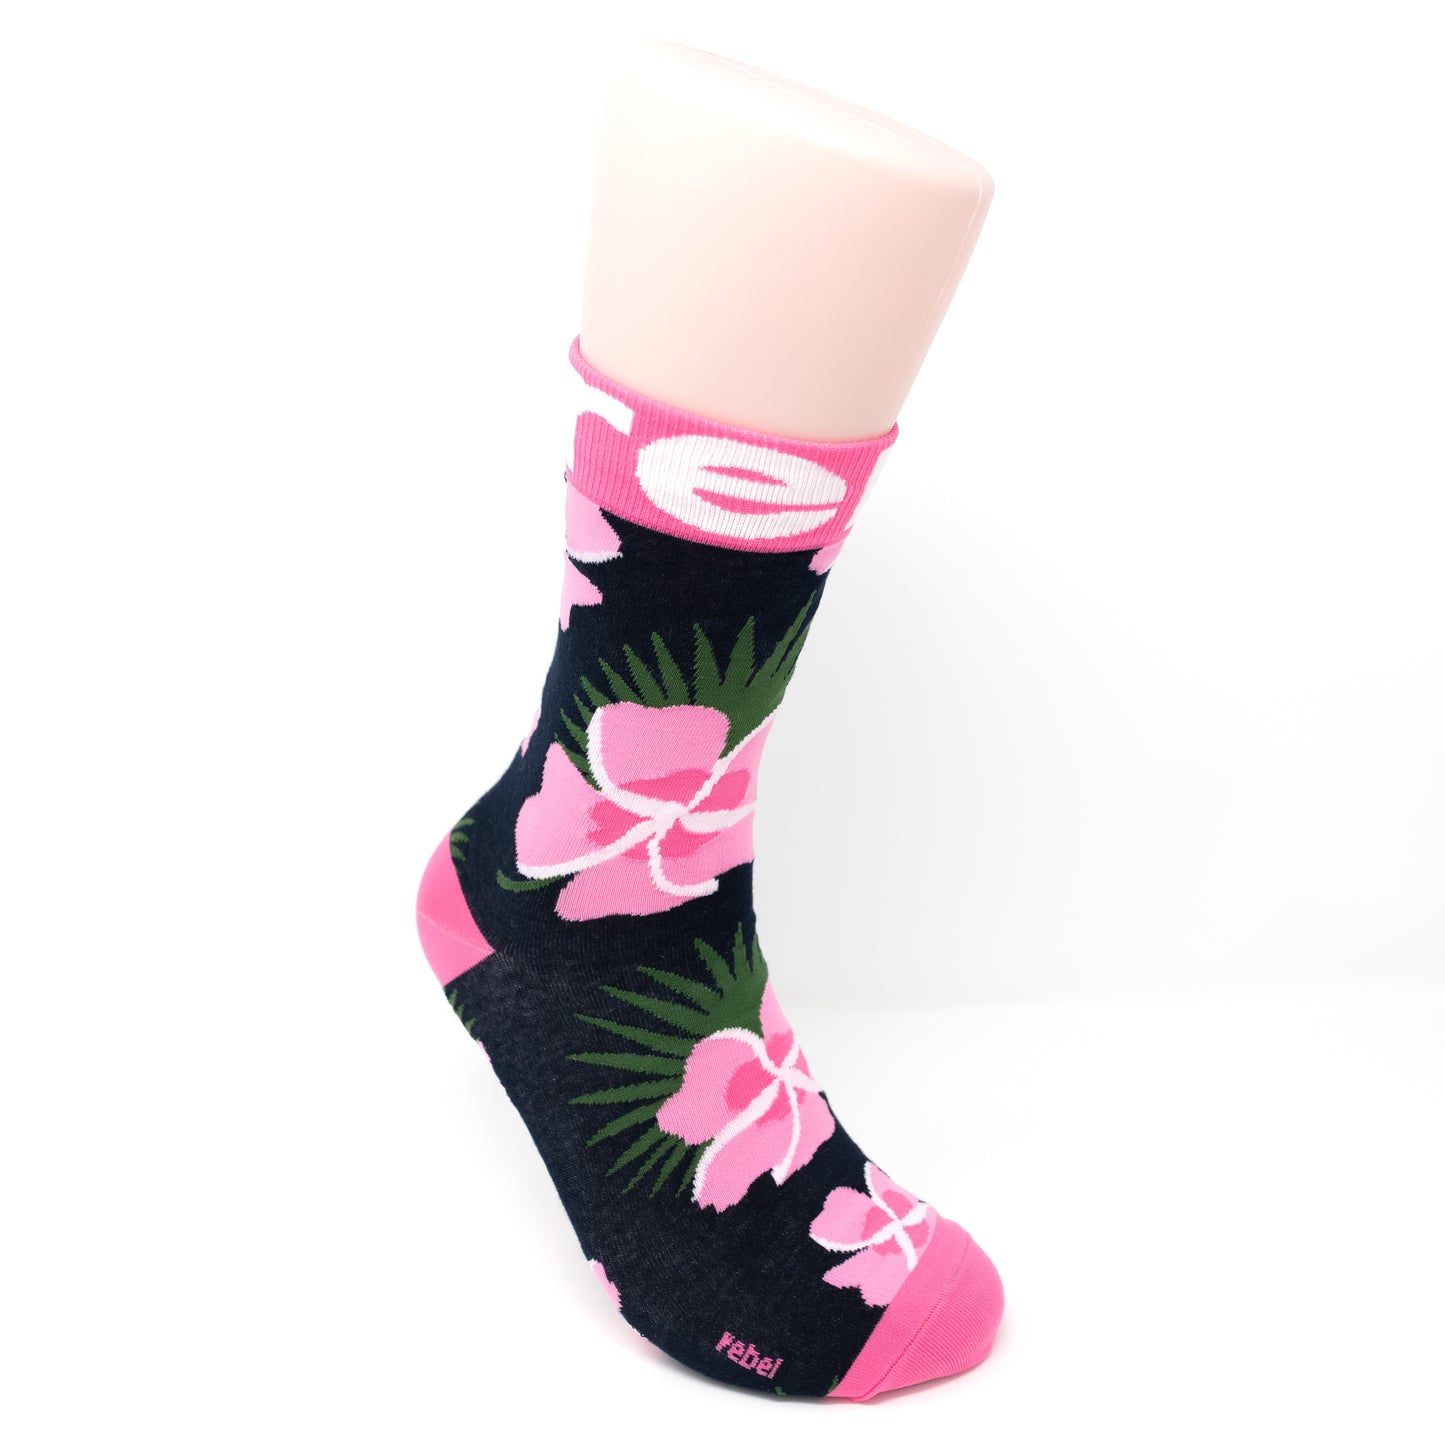 Rebel Crew Socks in Pink Adult – Rebel Athletic